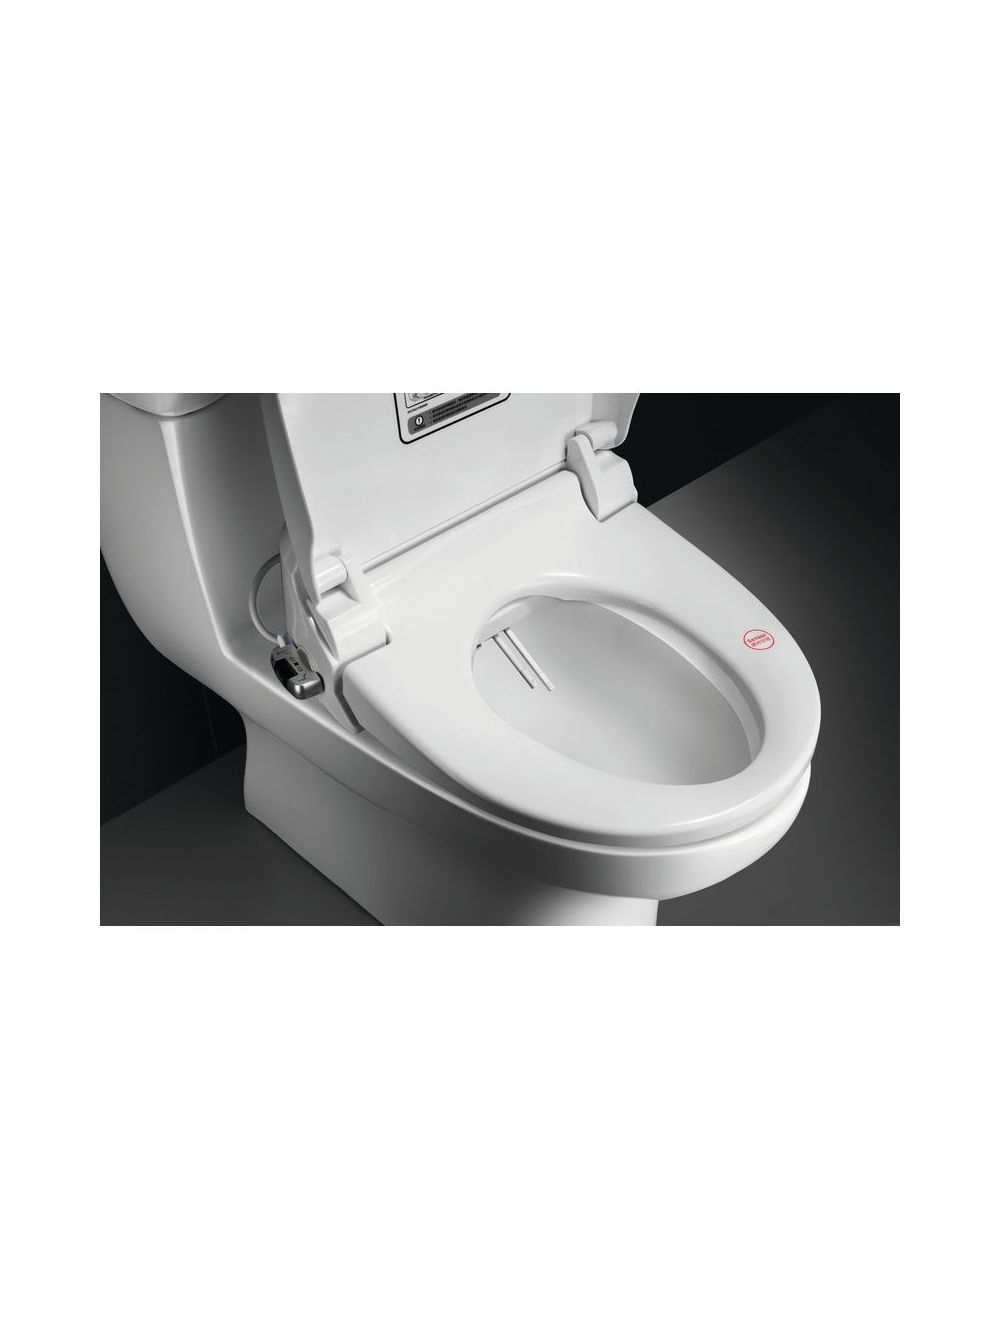 Abattant WC japonais Lavant Séchant Confort Hygiène